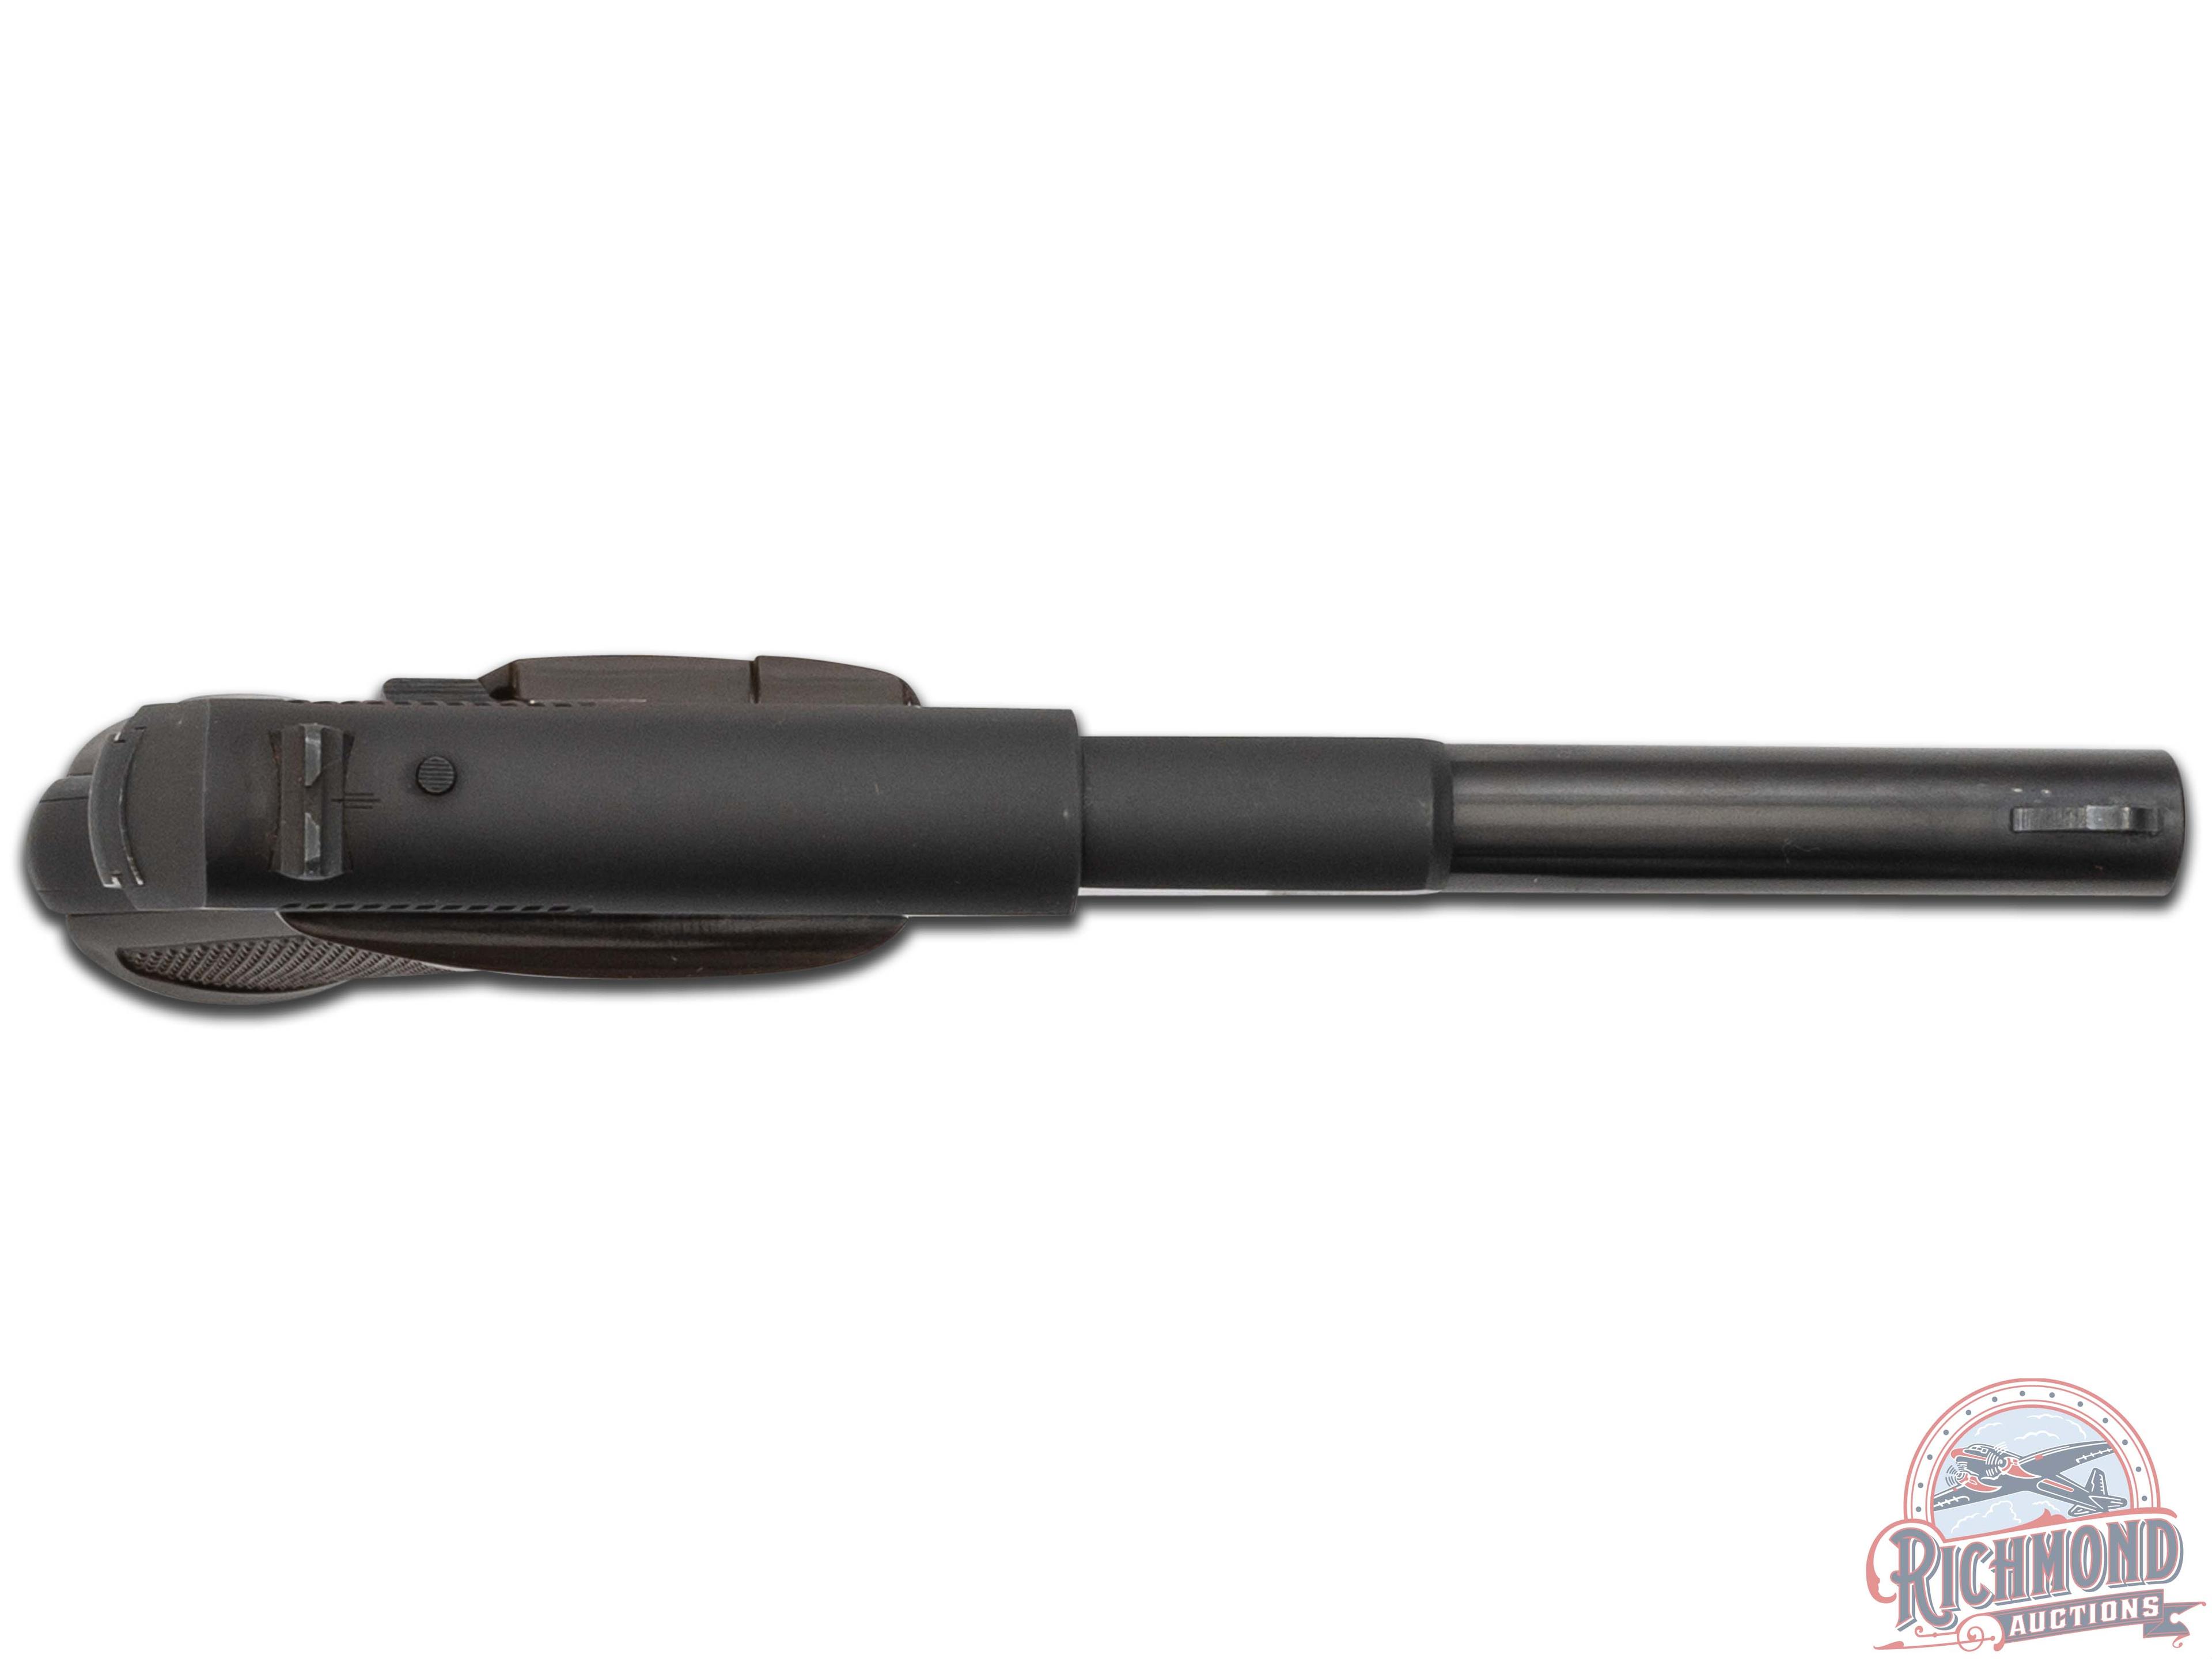 1952 Colt Challenger Target .22 LR 4.5" Semi-Automatic Pistol